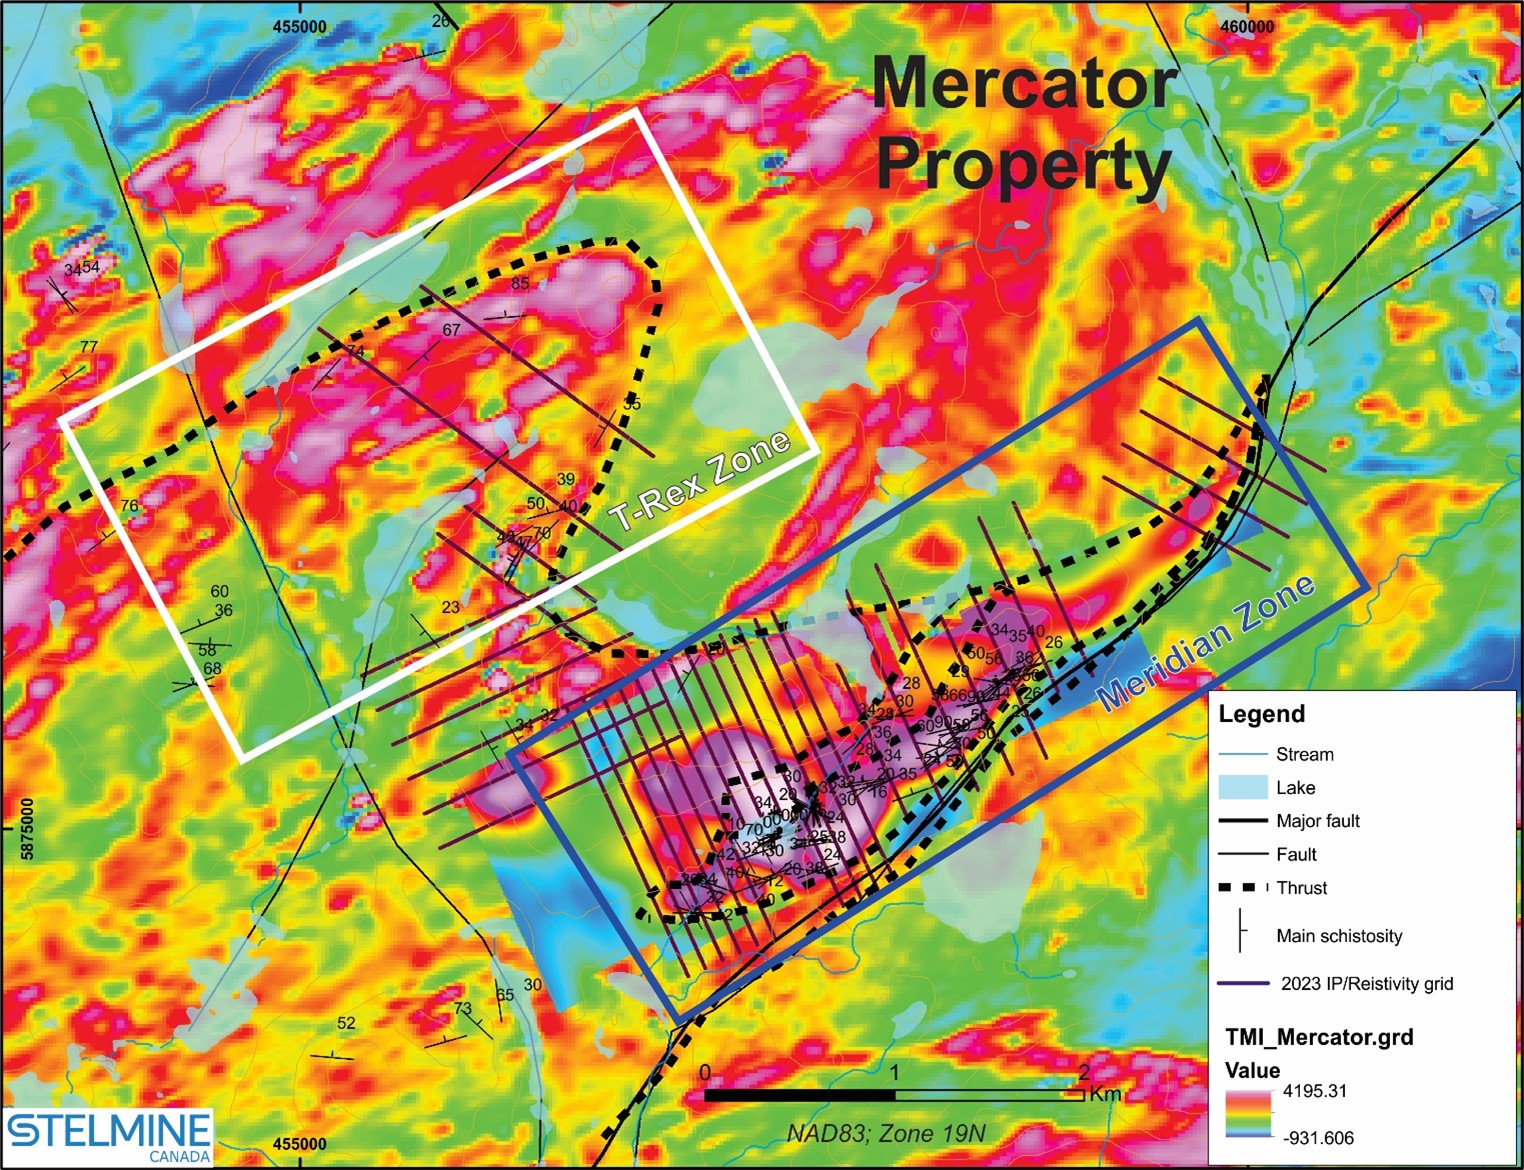 Carte de contour de l’Intensité Magnétique Totale (TMI) montrant la zone aurifère Meridian et la zone T-Rex à haut potentiel aurifère situées au cœur de la propriété Mercator.